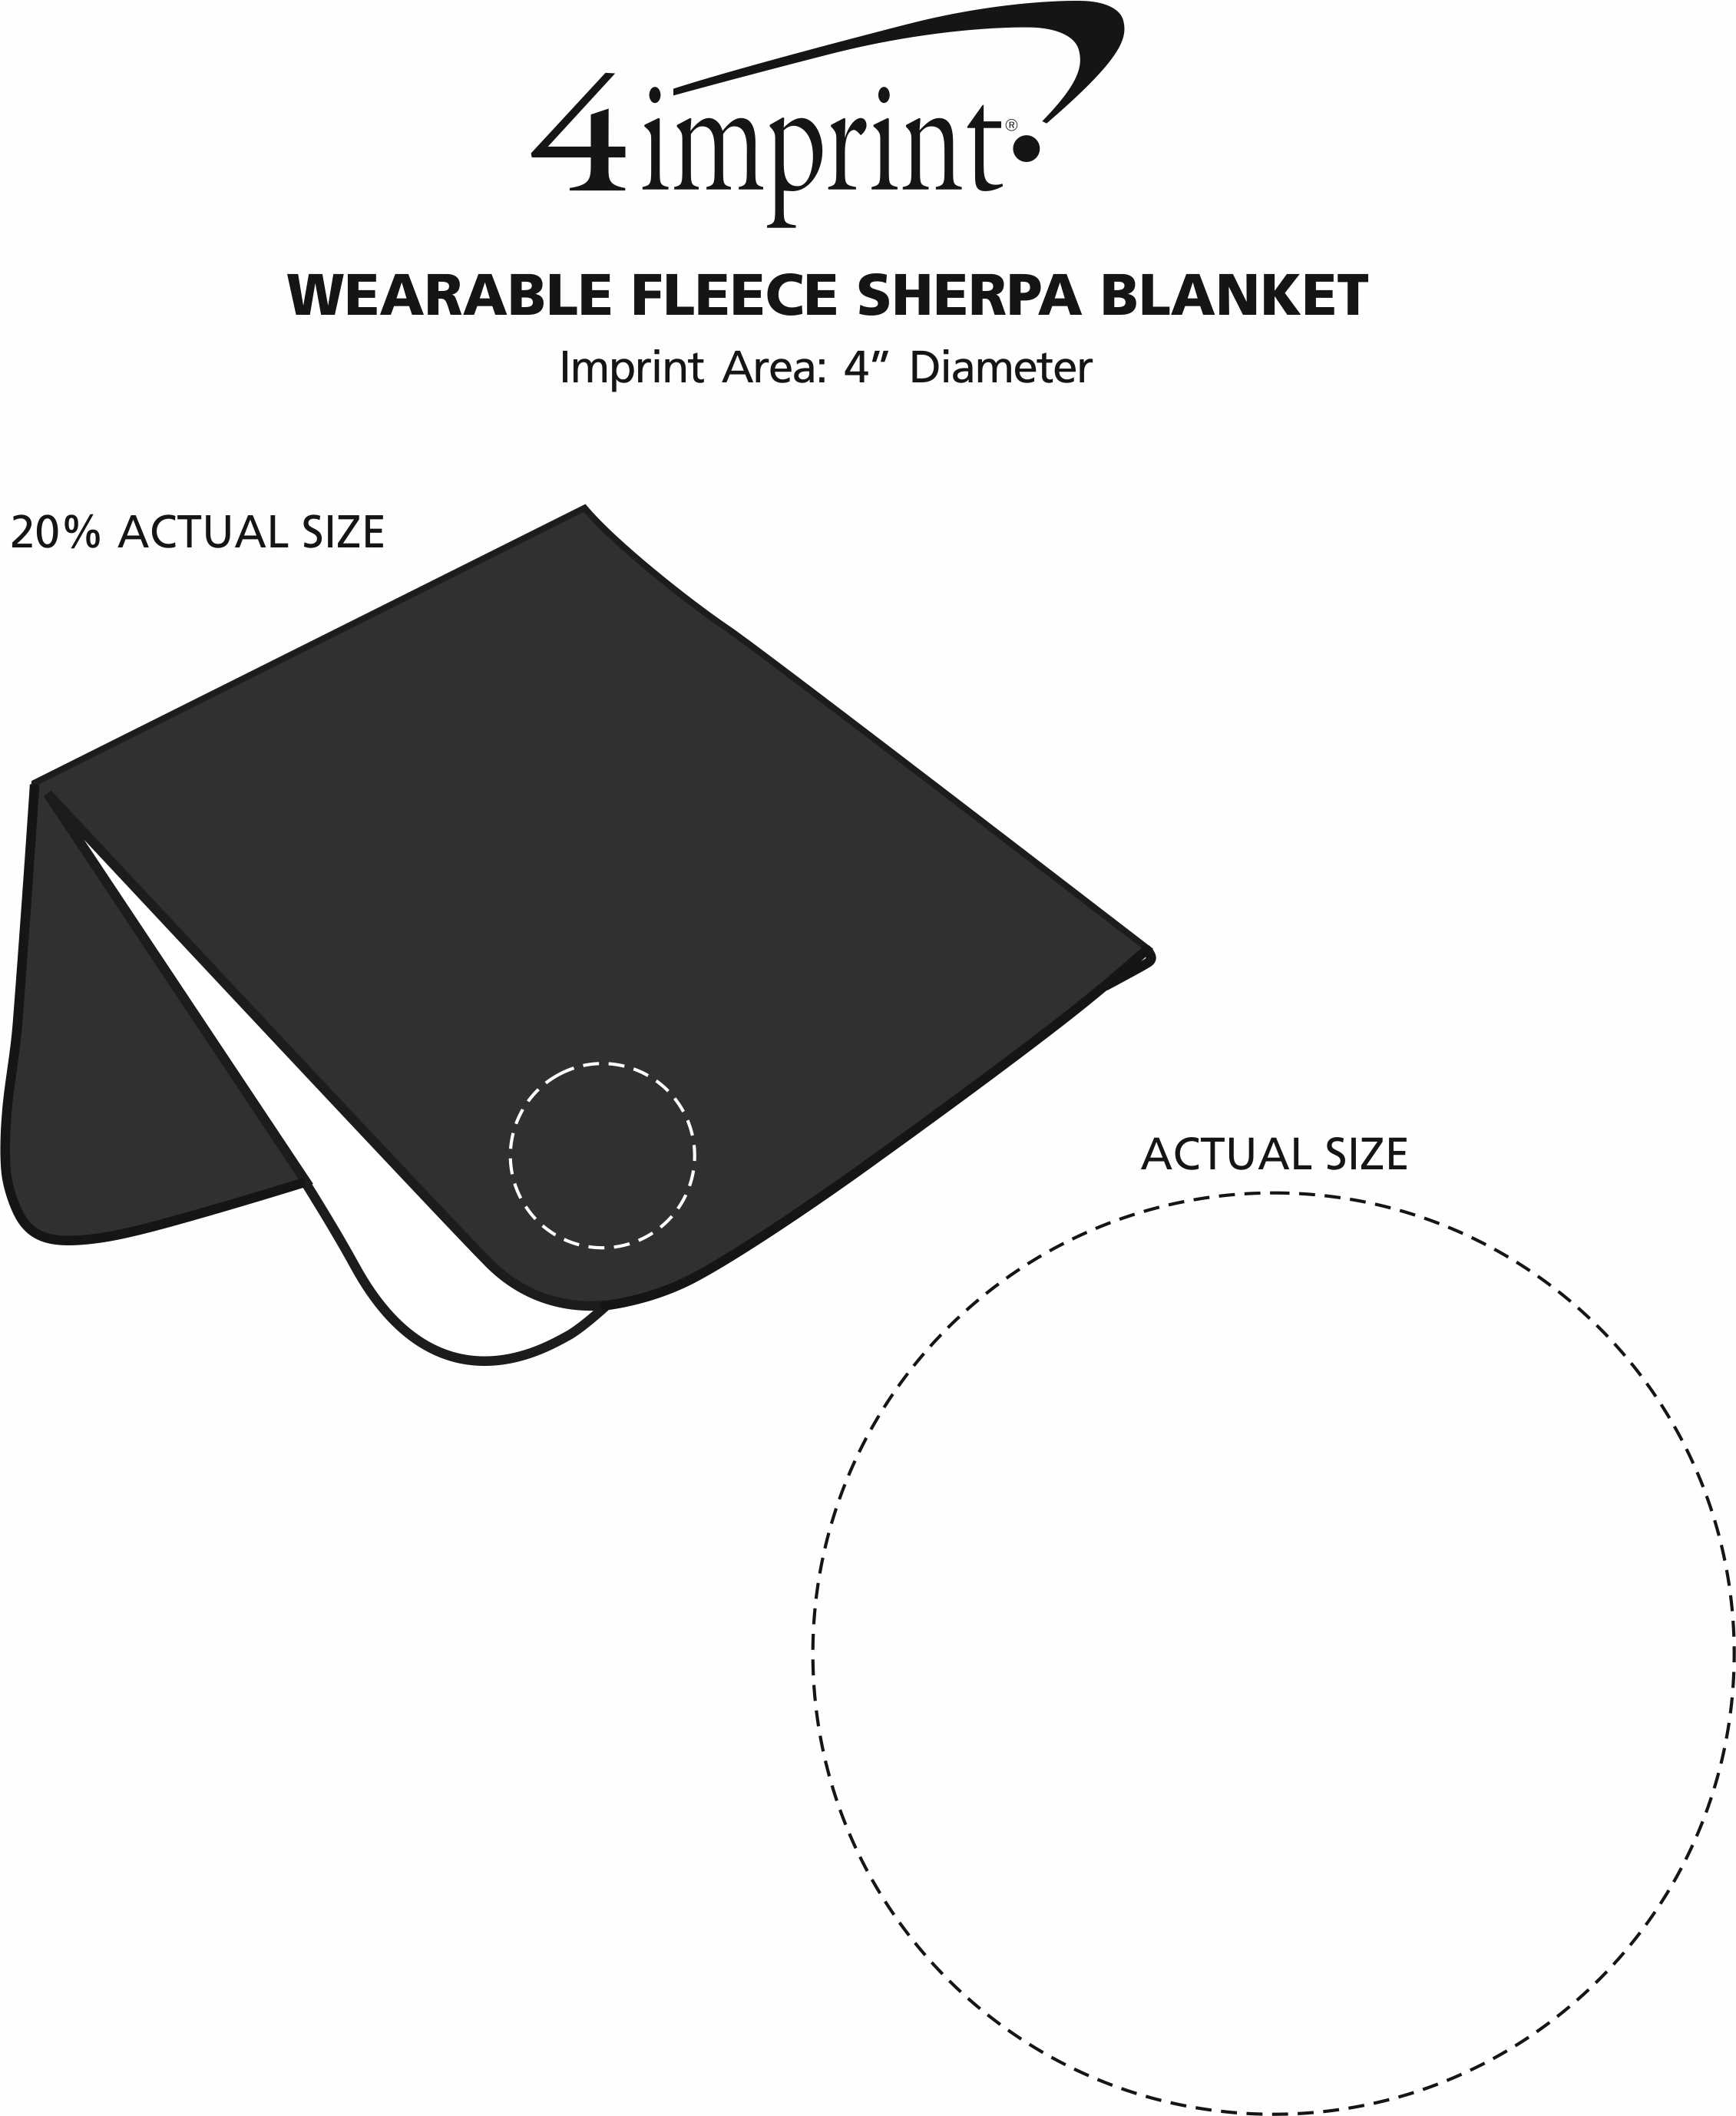 Imprint Area of Wearable Fleece Sherpa Blanket